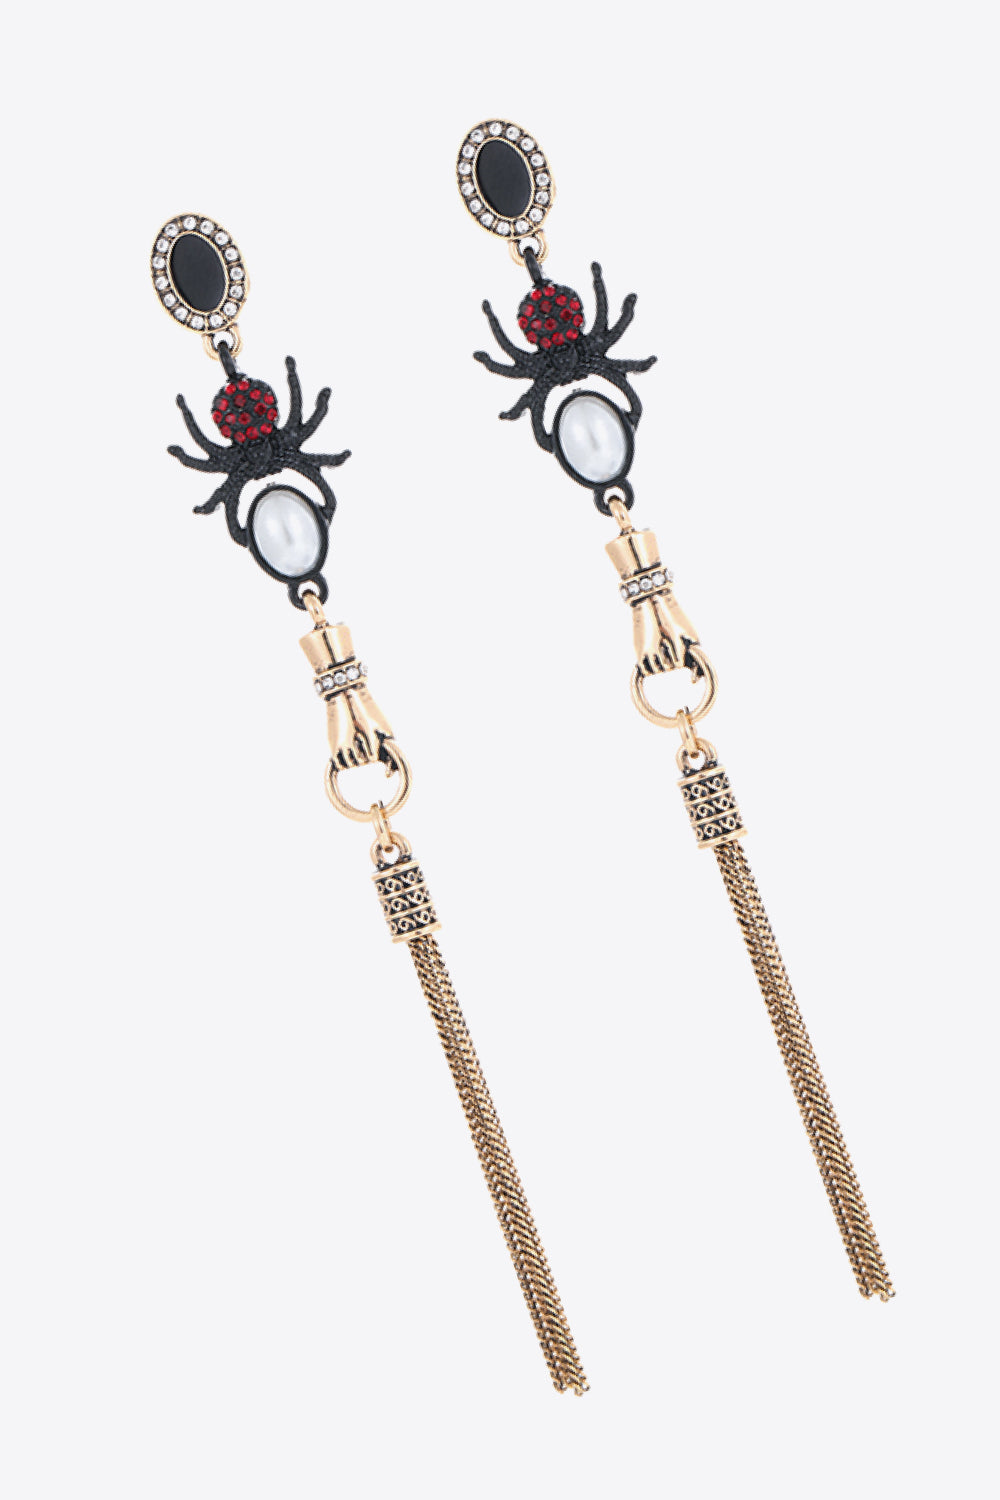 Spider Drop Earrings | AdoreStarr